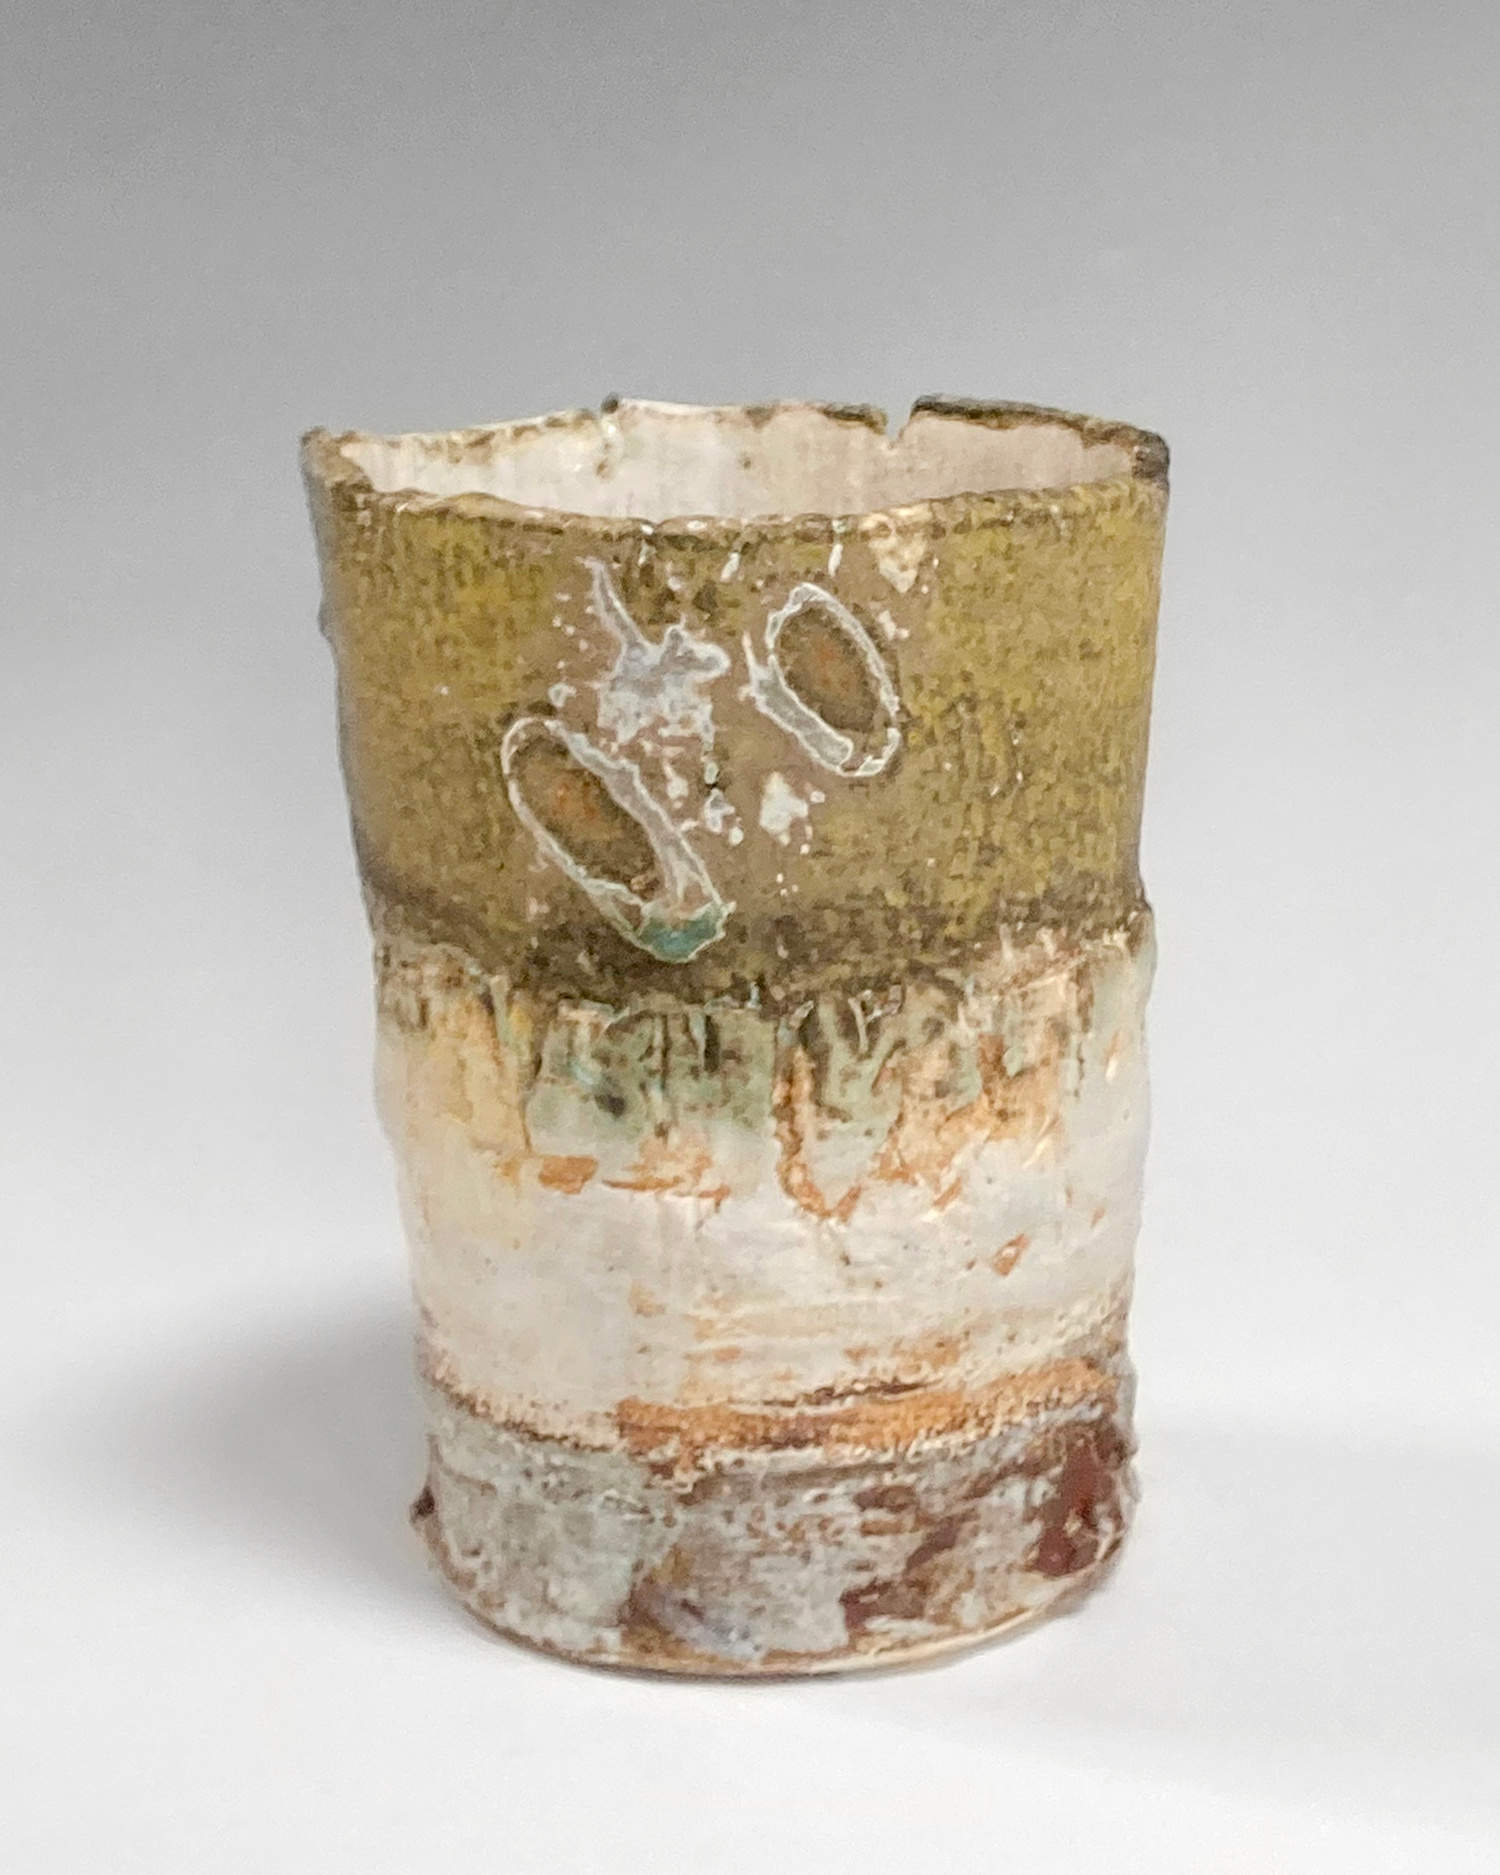 Bark Vessel with Fingerprints by Rachel Wood